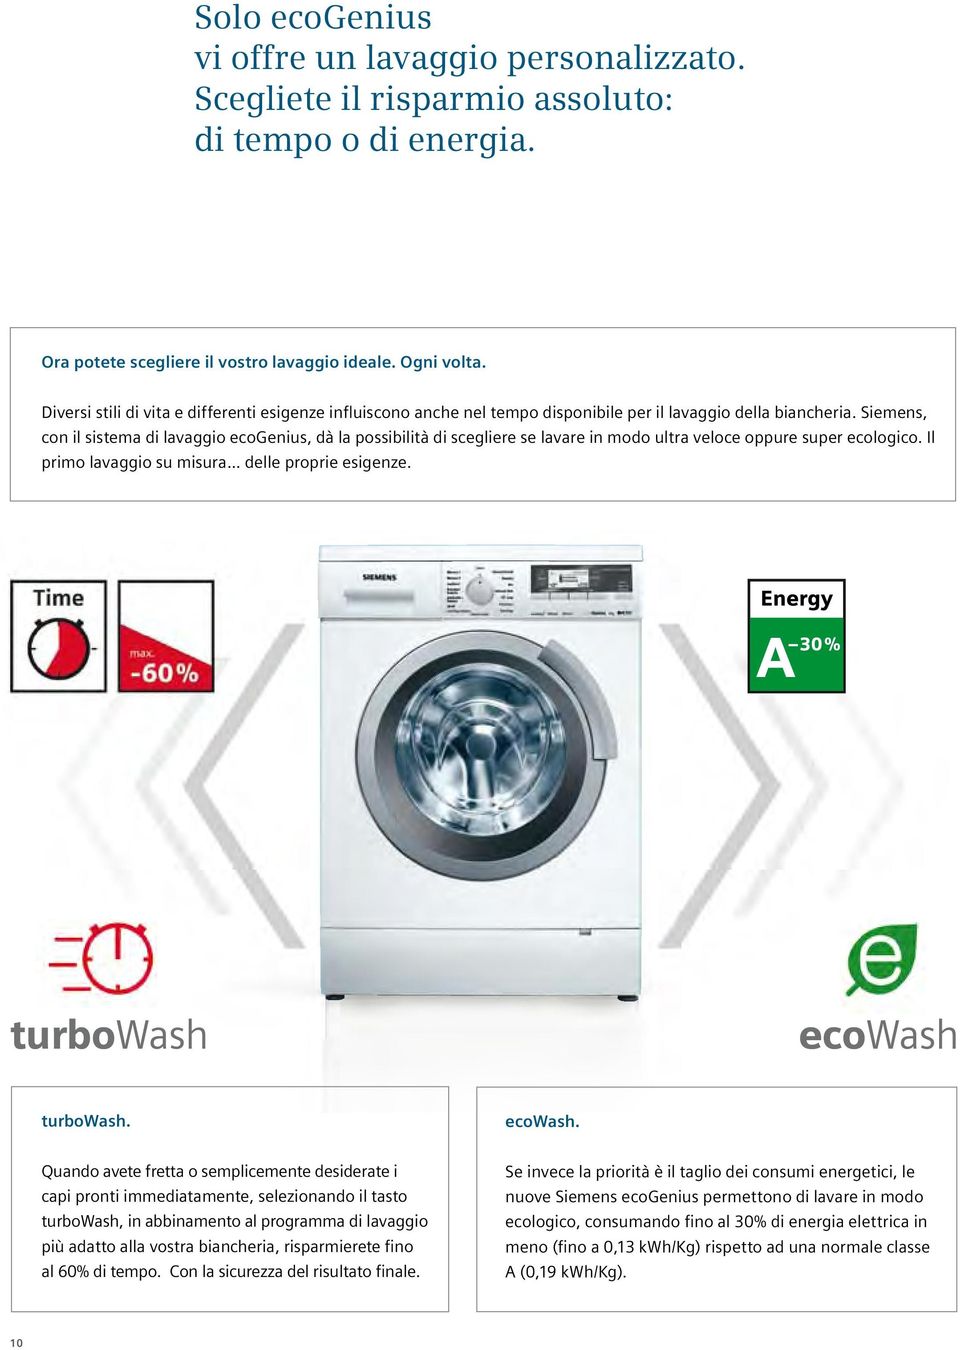 Siemens, con il sistema di lavaggio ecogenius, dà la possibilità di scegliere se lavare in modo ultra veloce oppure super ecologico. Il primo lavaggio su misura... delle proprie esigenze.